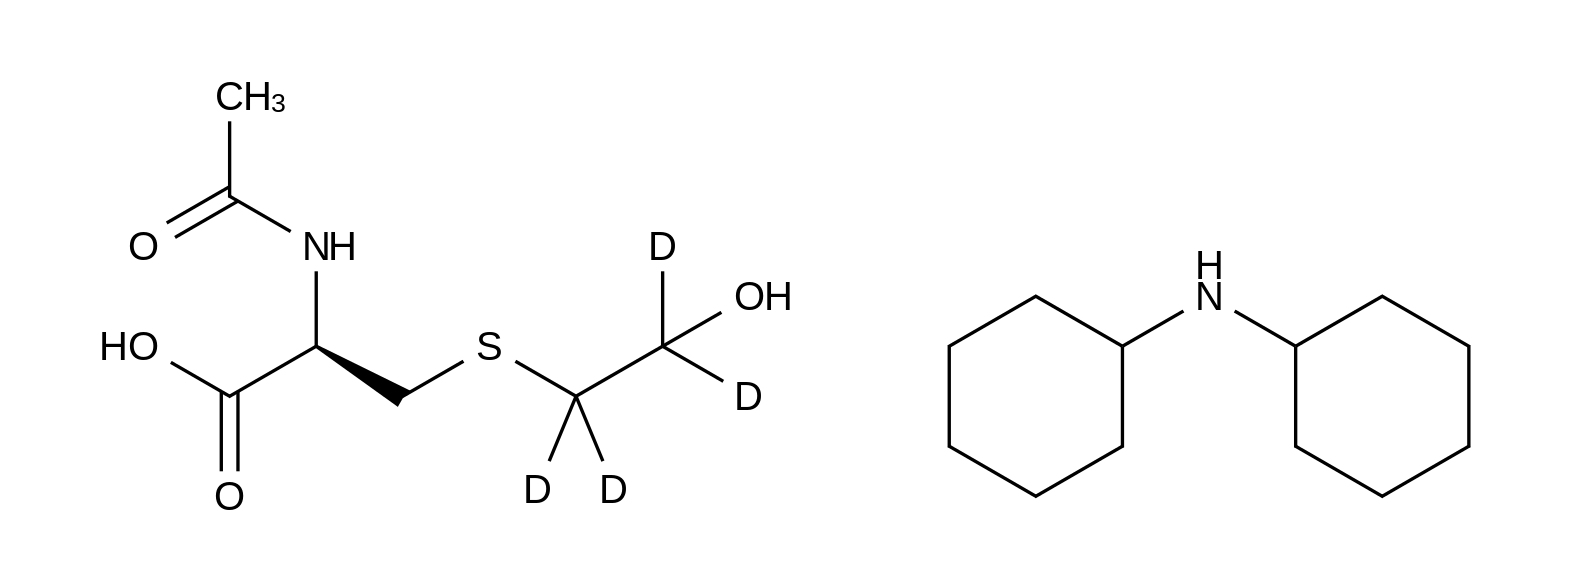 N-Acetyl-S-(2-hydroxyethyl-d<sub>4</sub>)-L-cysteine dicyclohexylamine salt